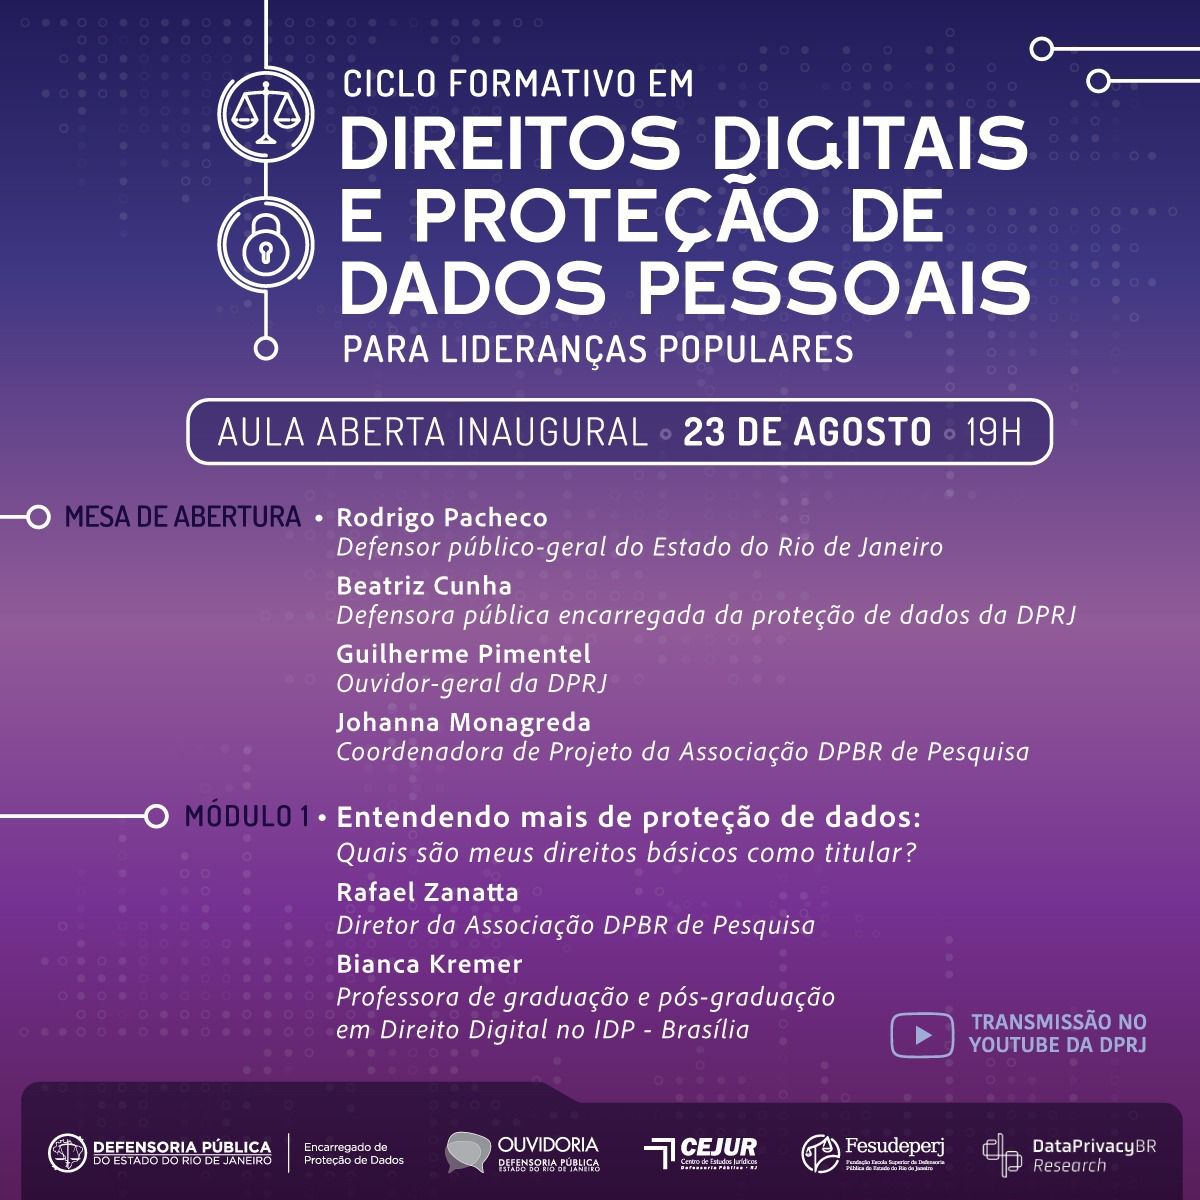  Ciclo Formativo em Direitos Digitais e Proteção de Dados para Lideranças Populares